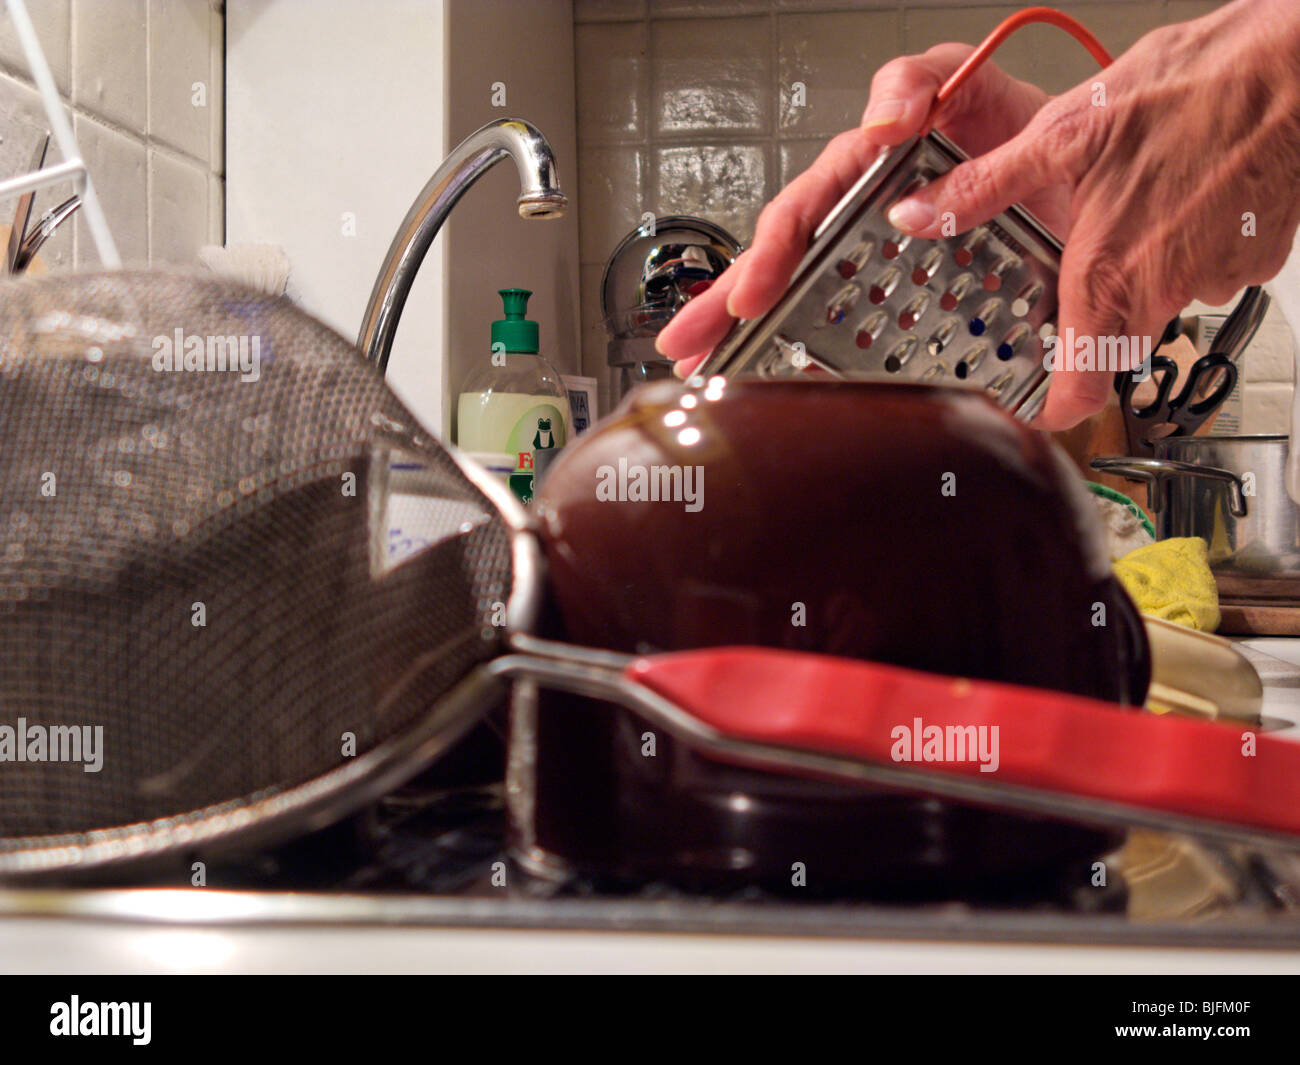 Nettoyage des mains de womans Ustensiles de cuisine Banque D'Images